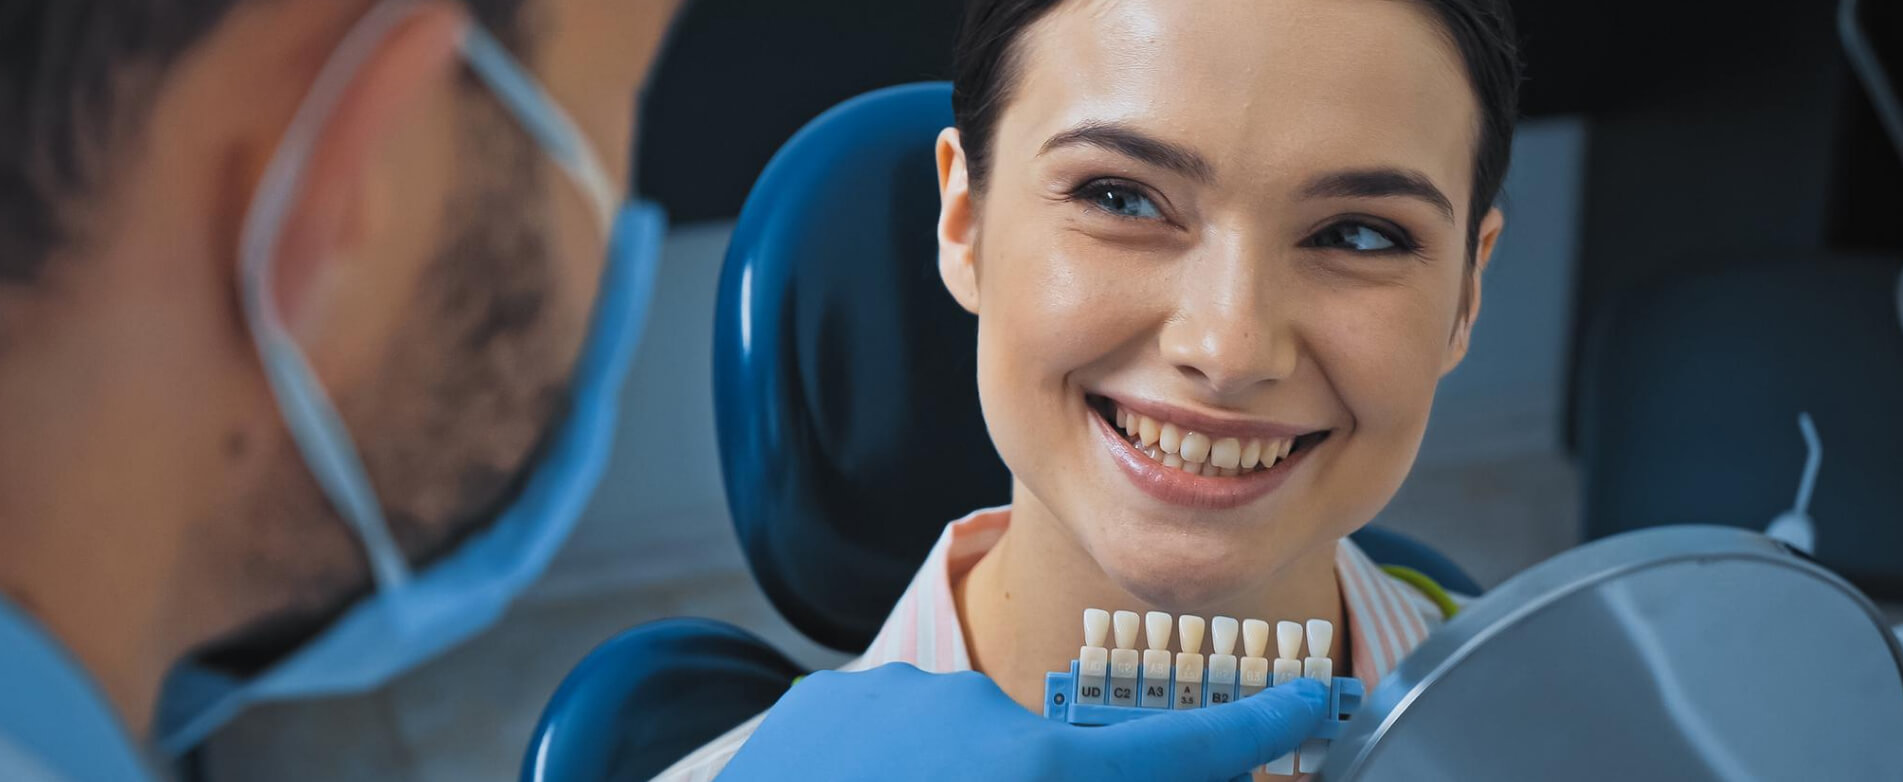 Сайт стоматолога и клиники: как привлечь платежеспособных клиентов